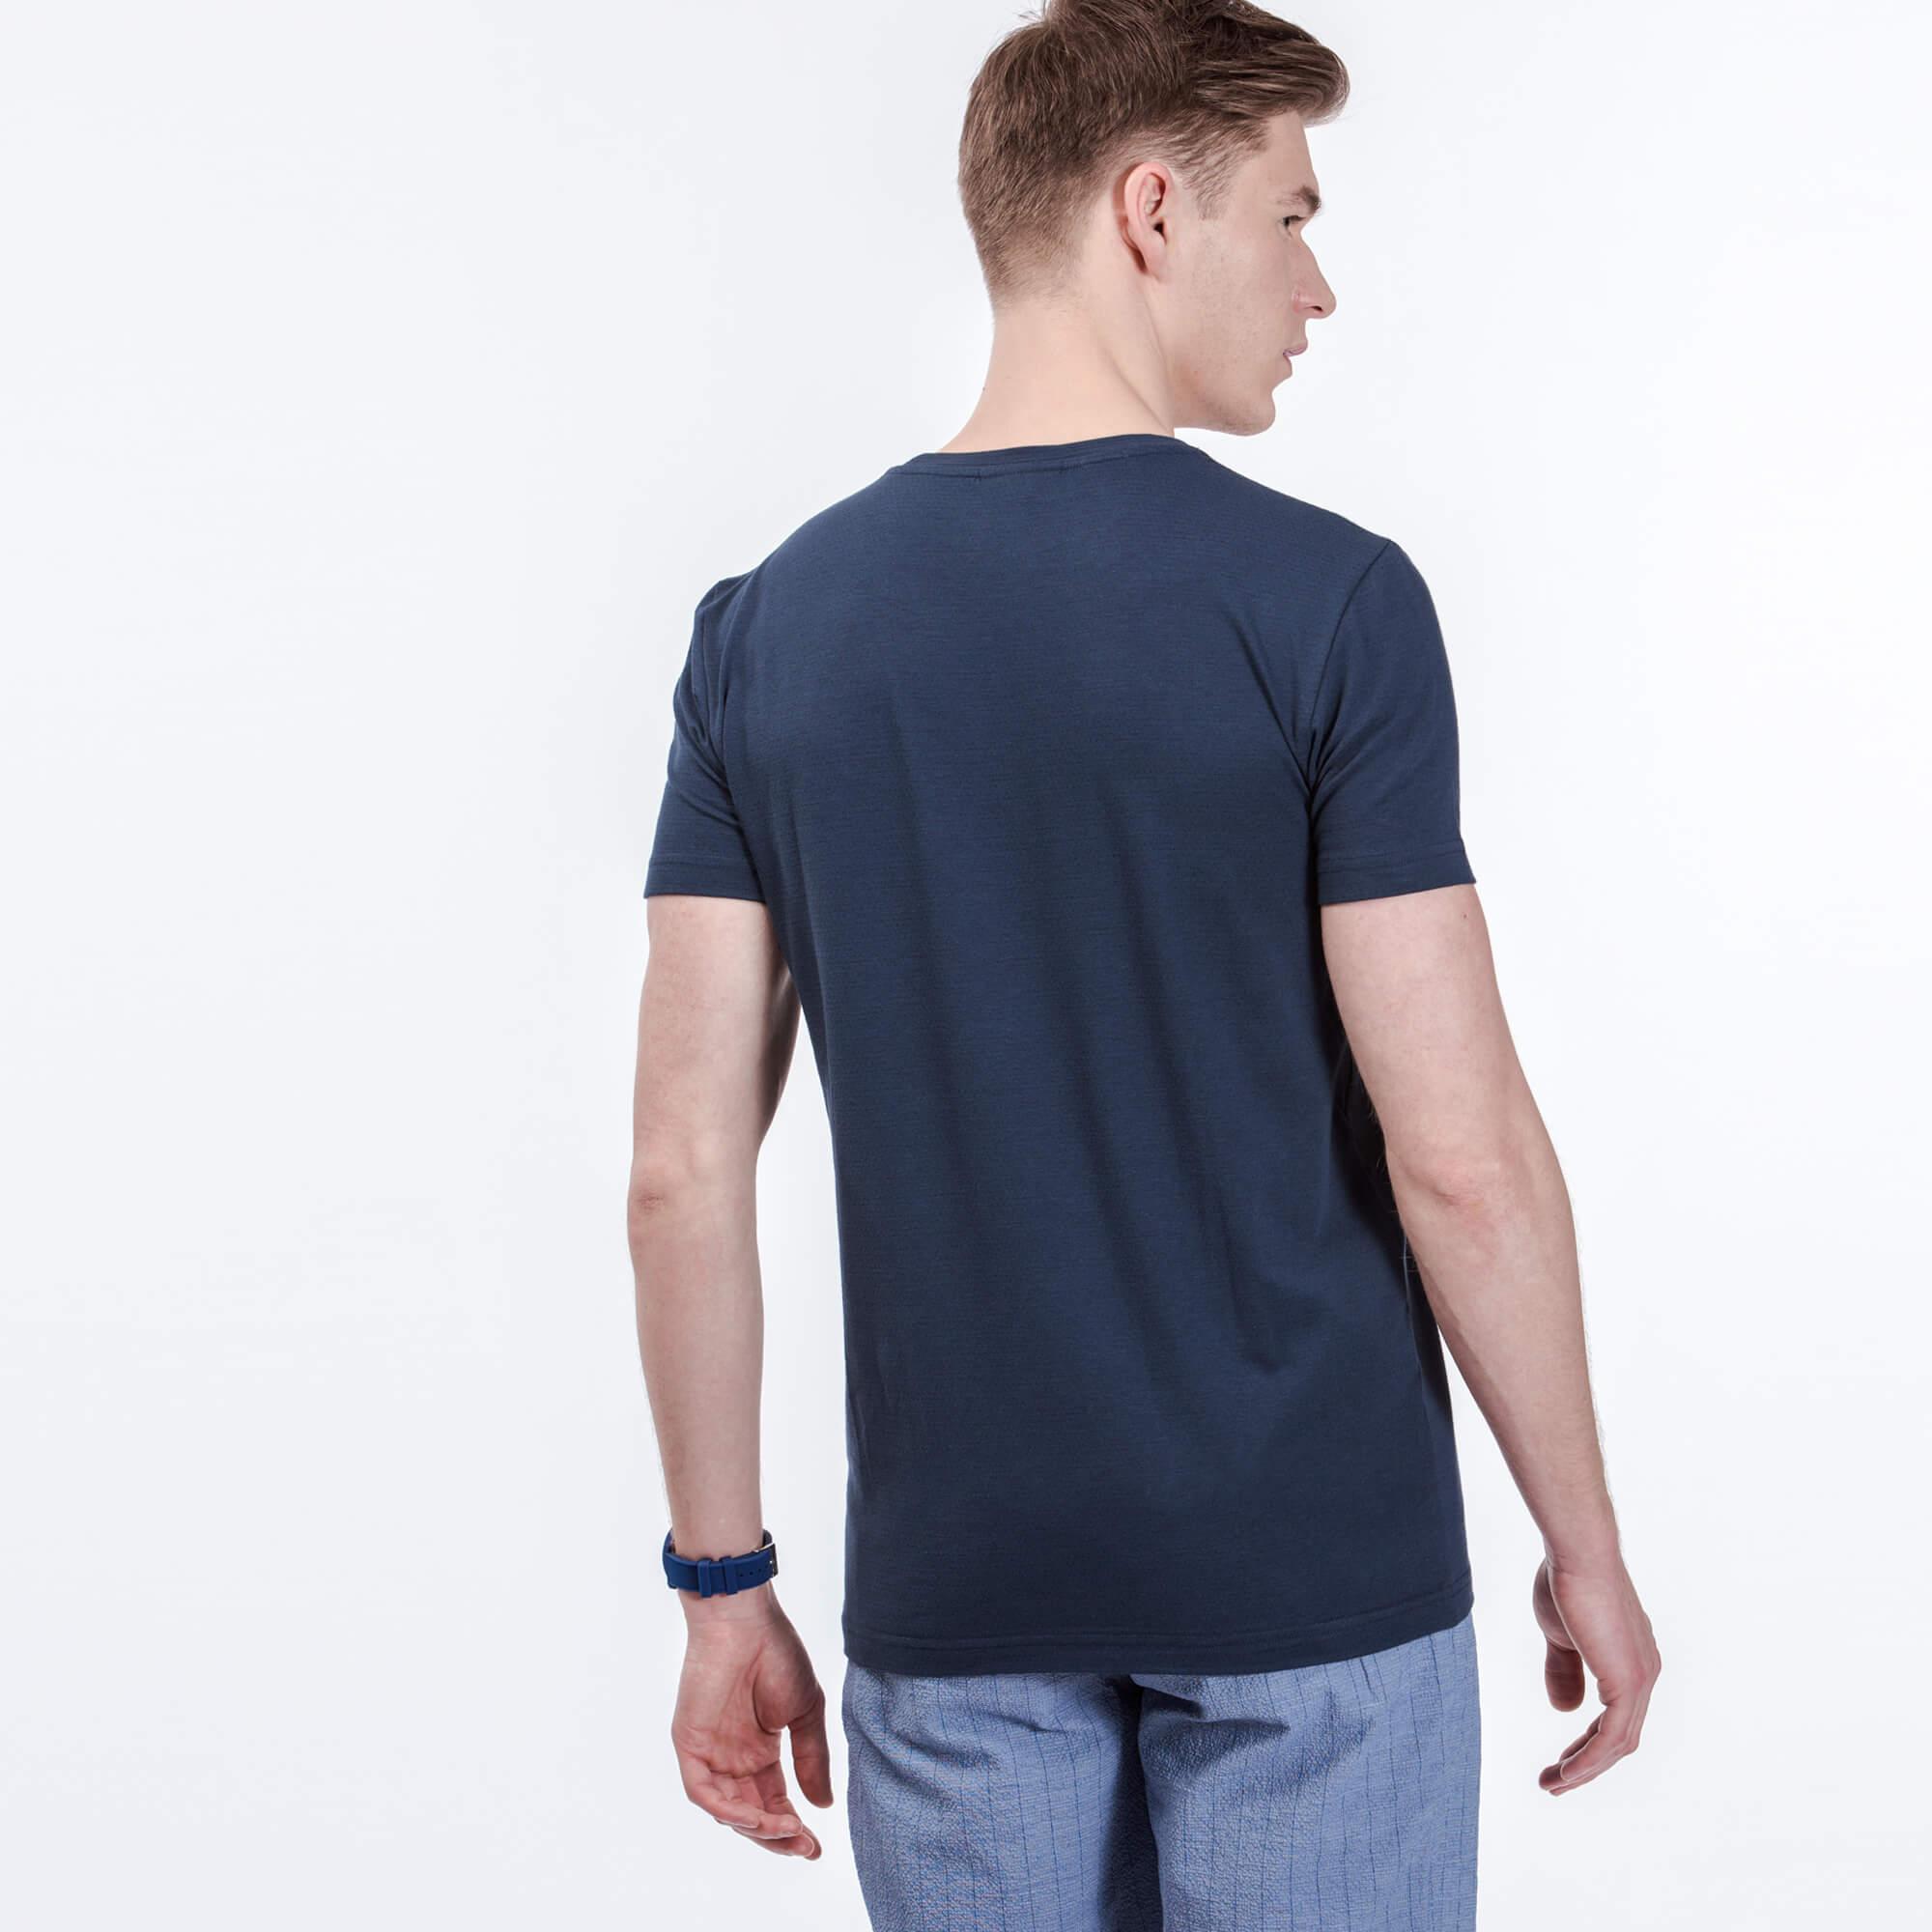 Lacoste Men's T-shirt  in patterns with round neckline